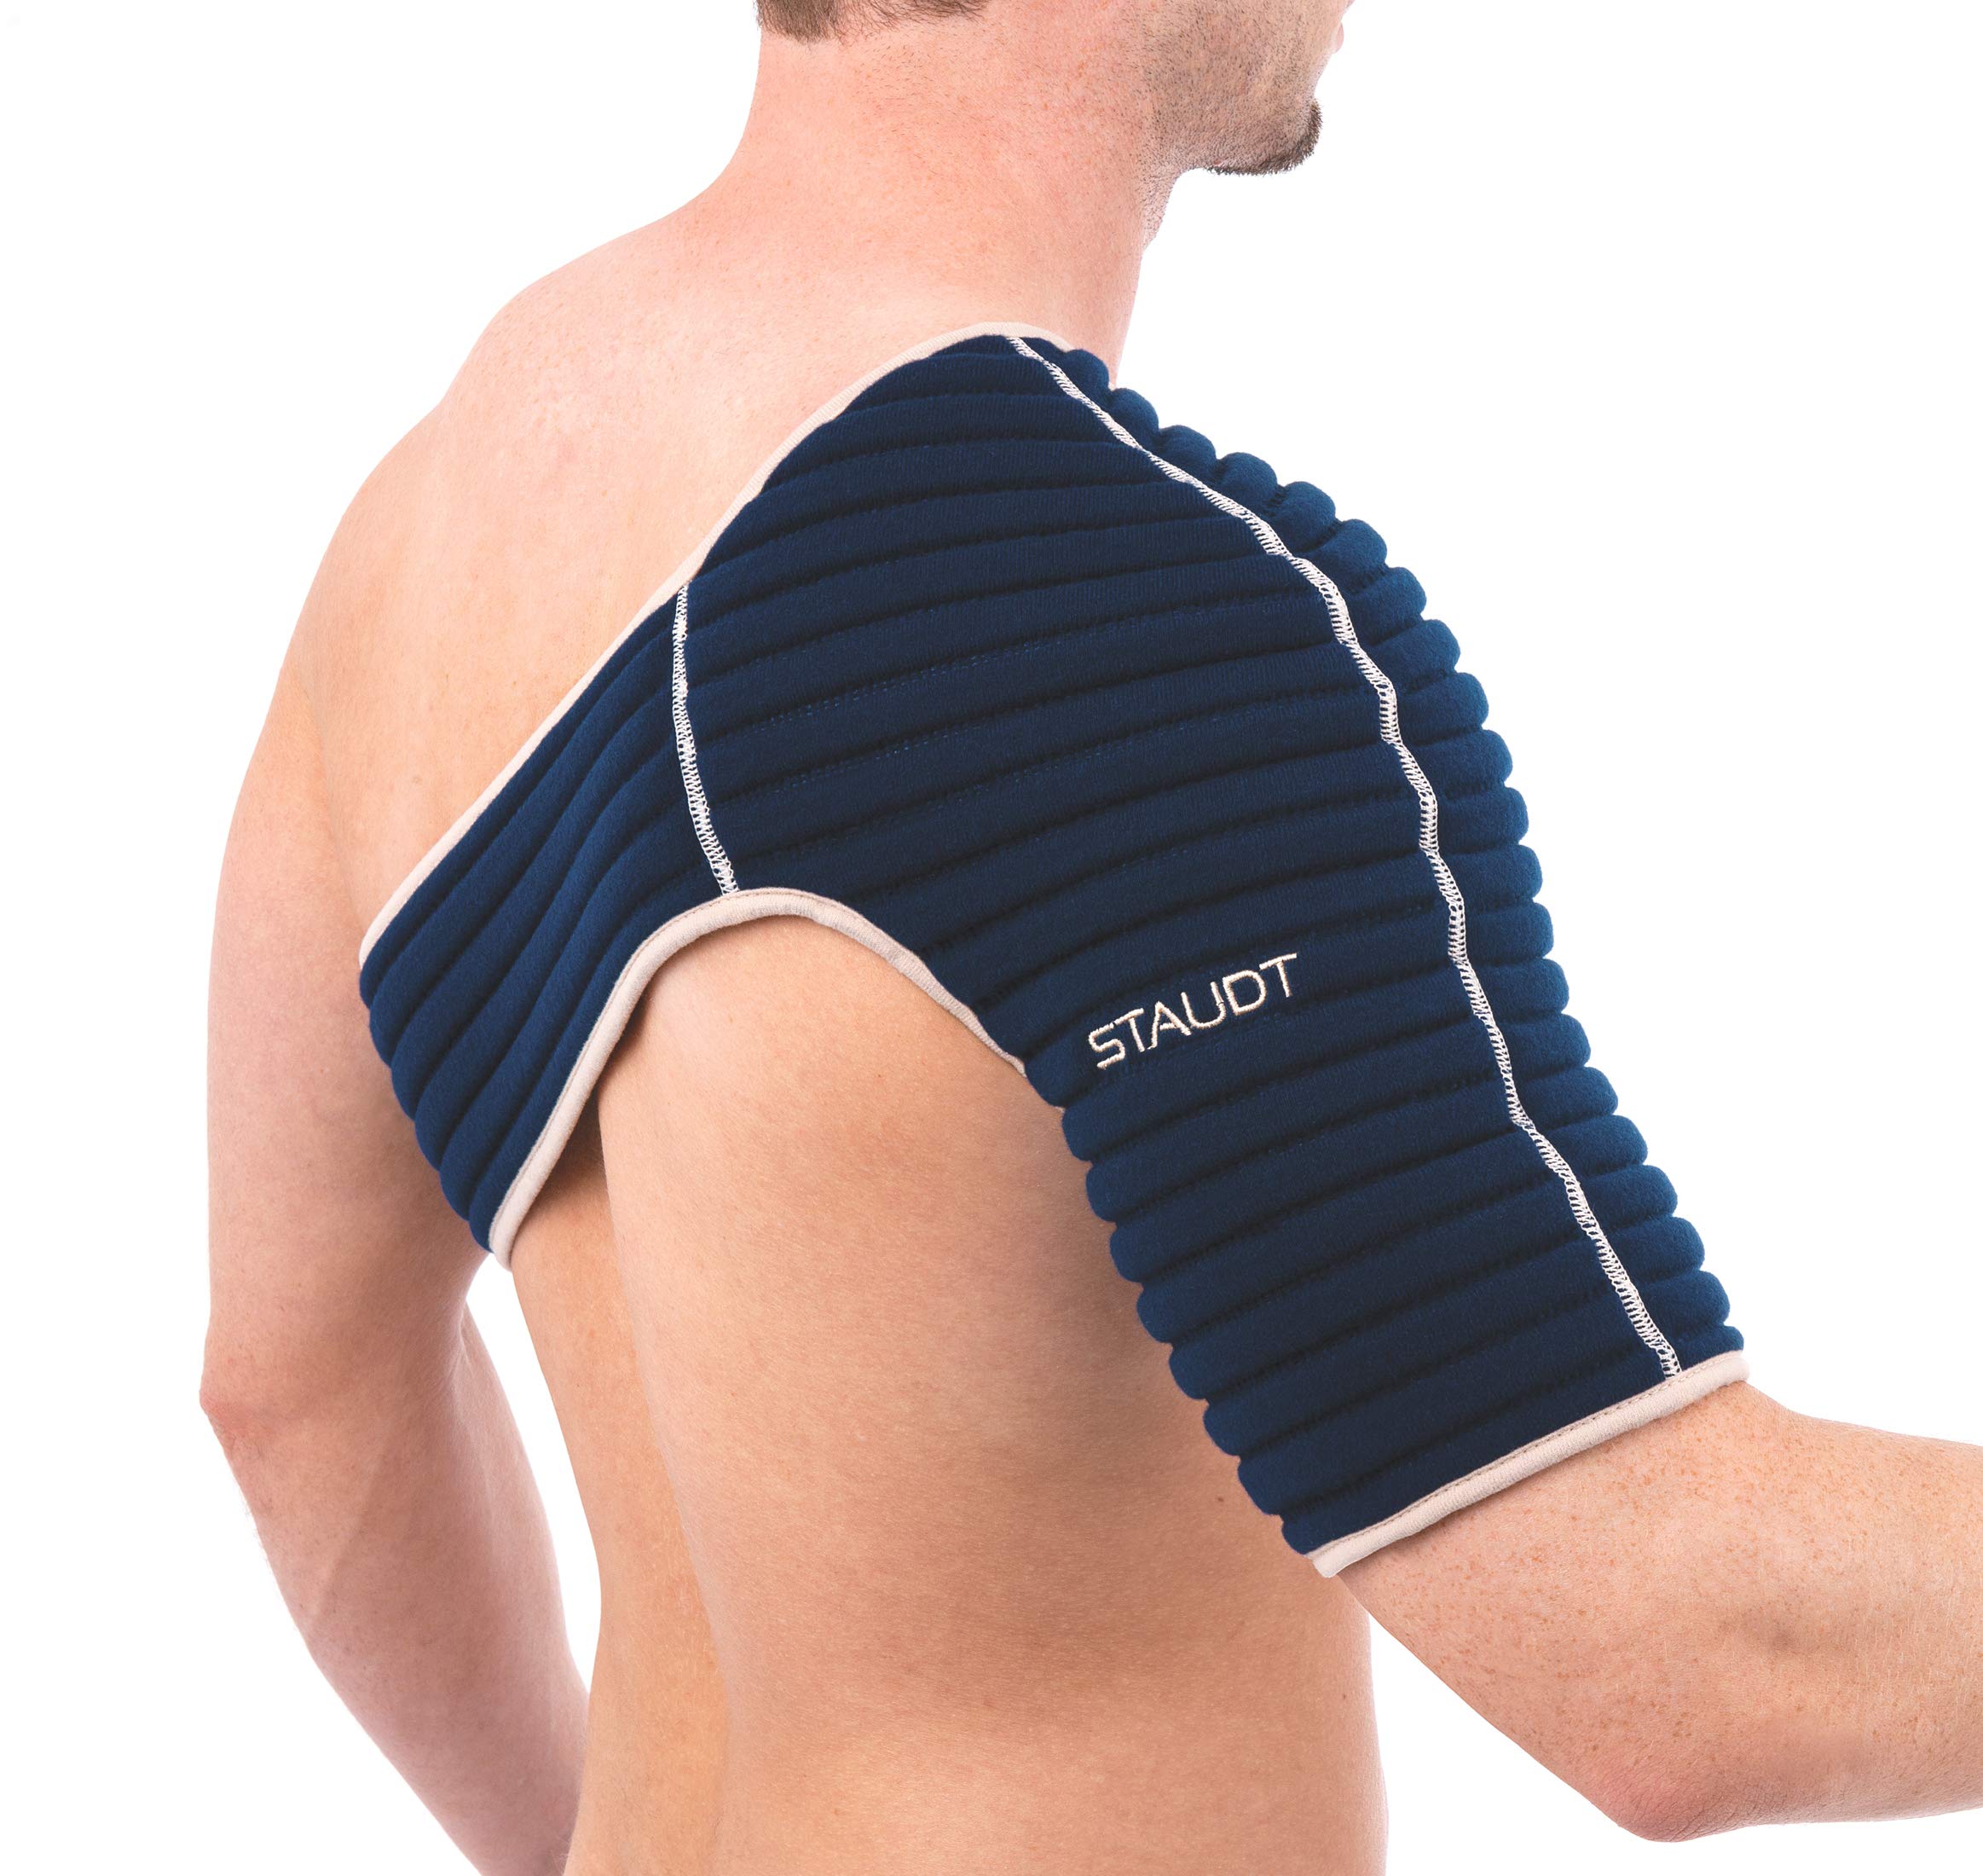 Staudt Schulter Manschette Active L | Nachts getragene Bandage zur Linderung von Schulterschmerzen mittels Mikro-Massage bei Nacht